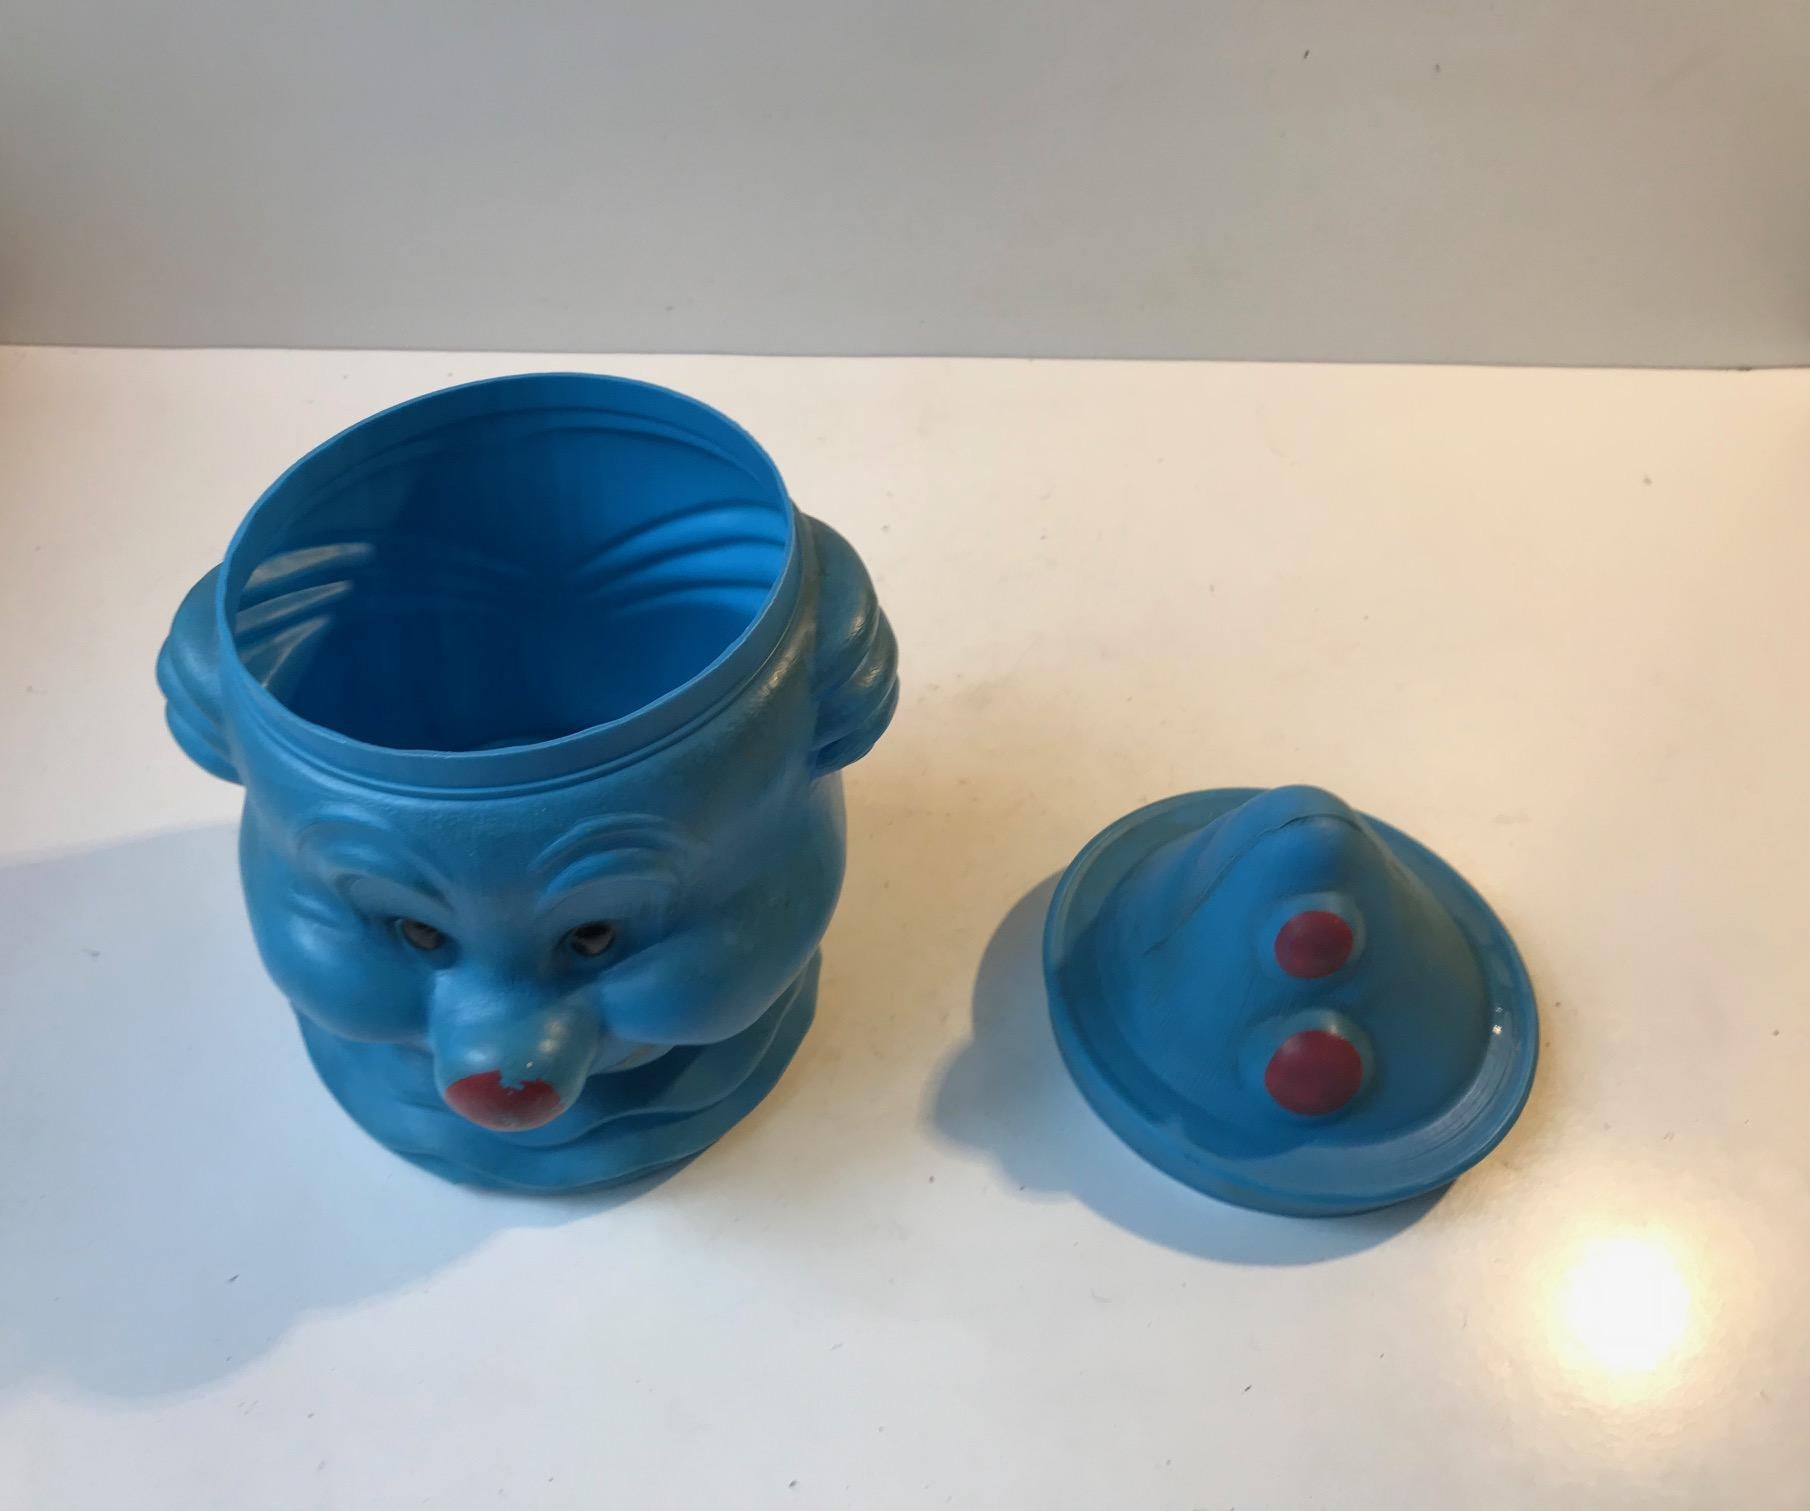 clown cookie jar